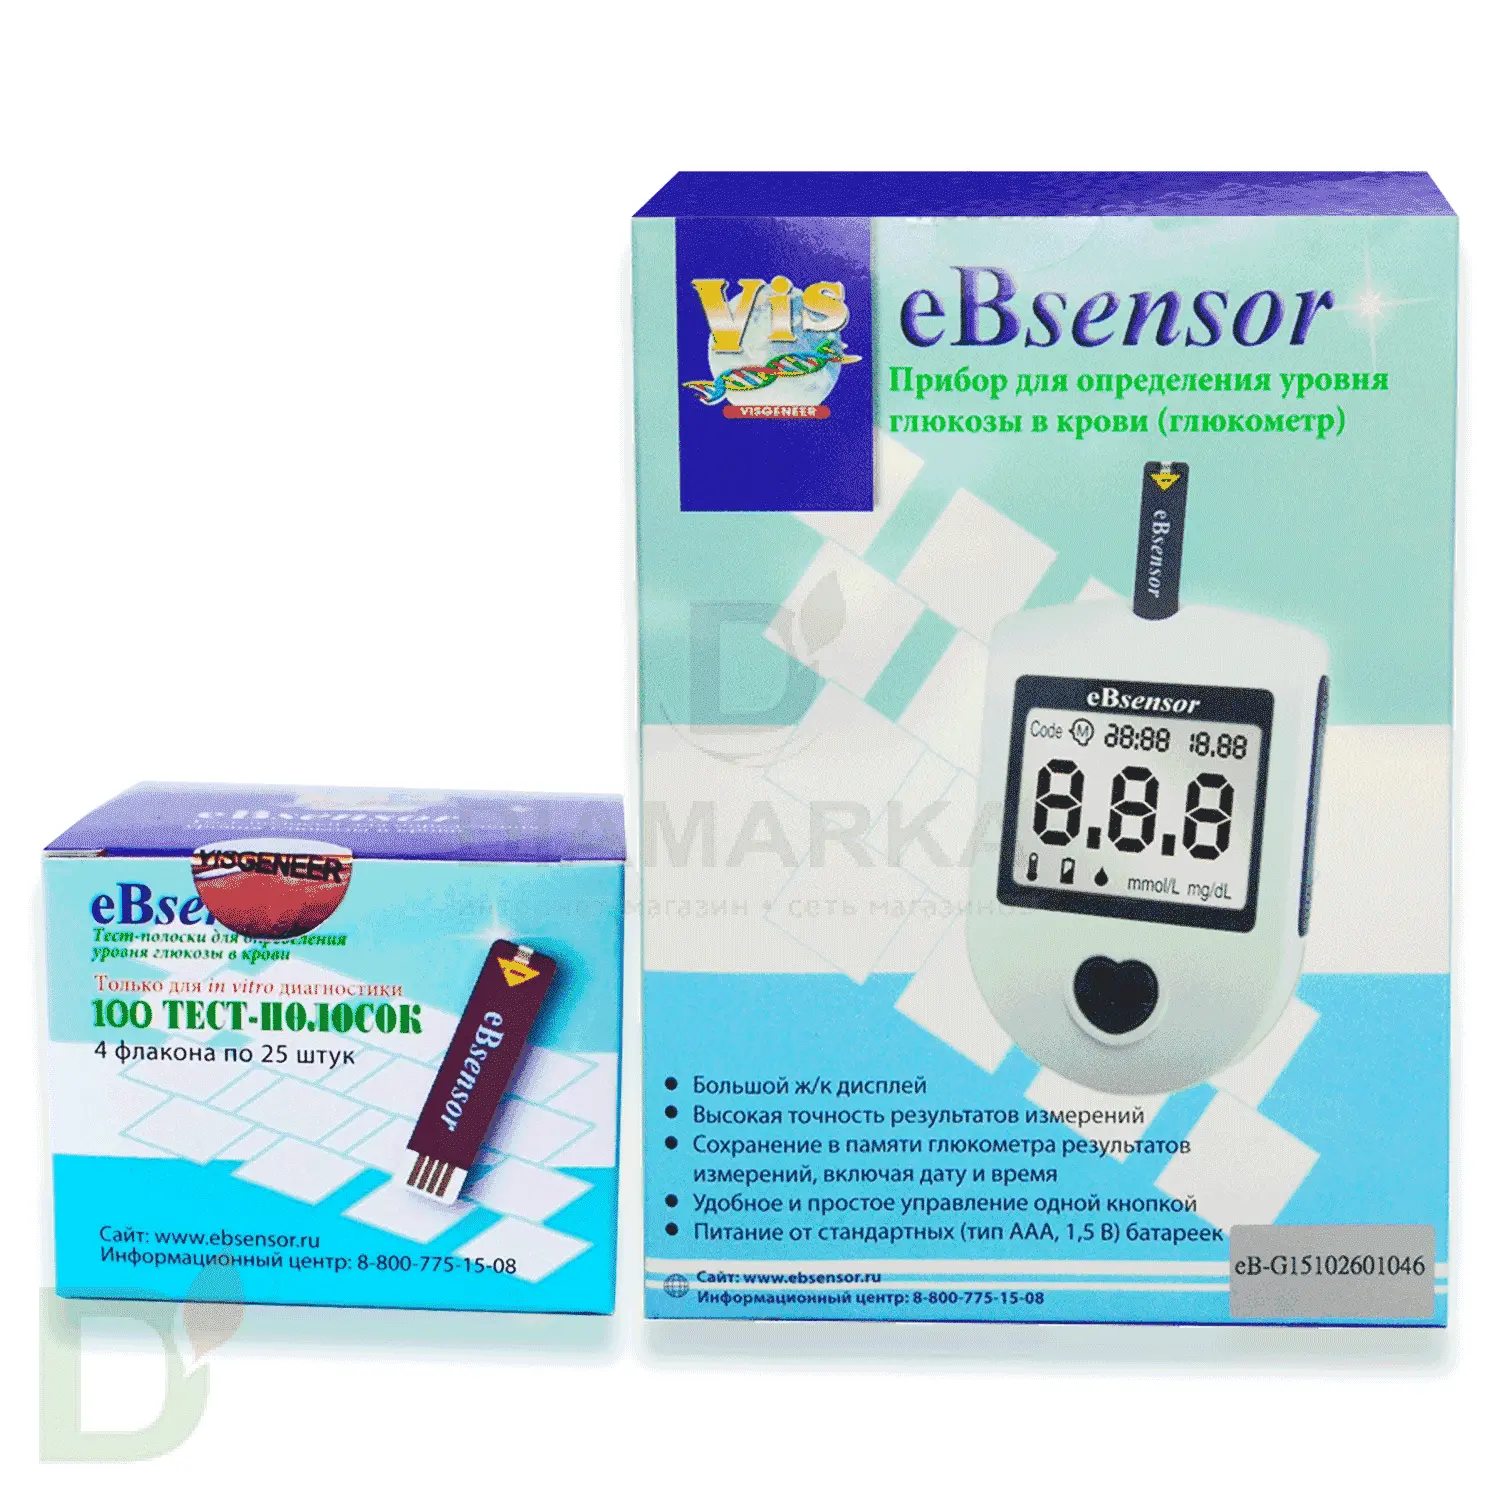 Глюкометр еБсенсор со СКИДКОЙ + 100 тест-полосок еБсенсор